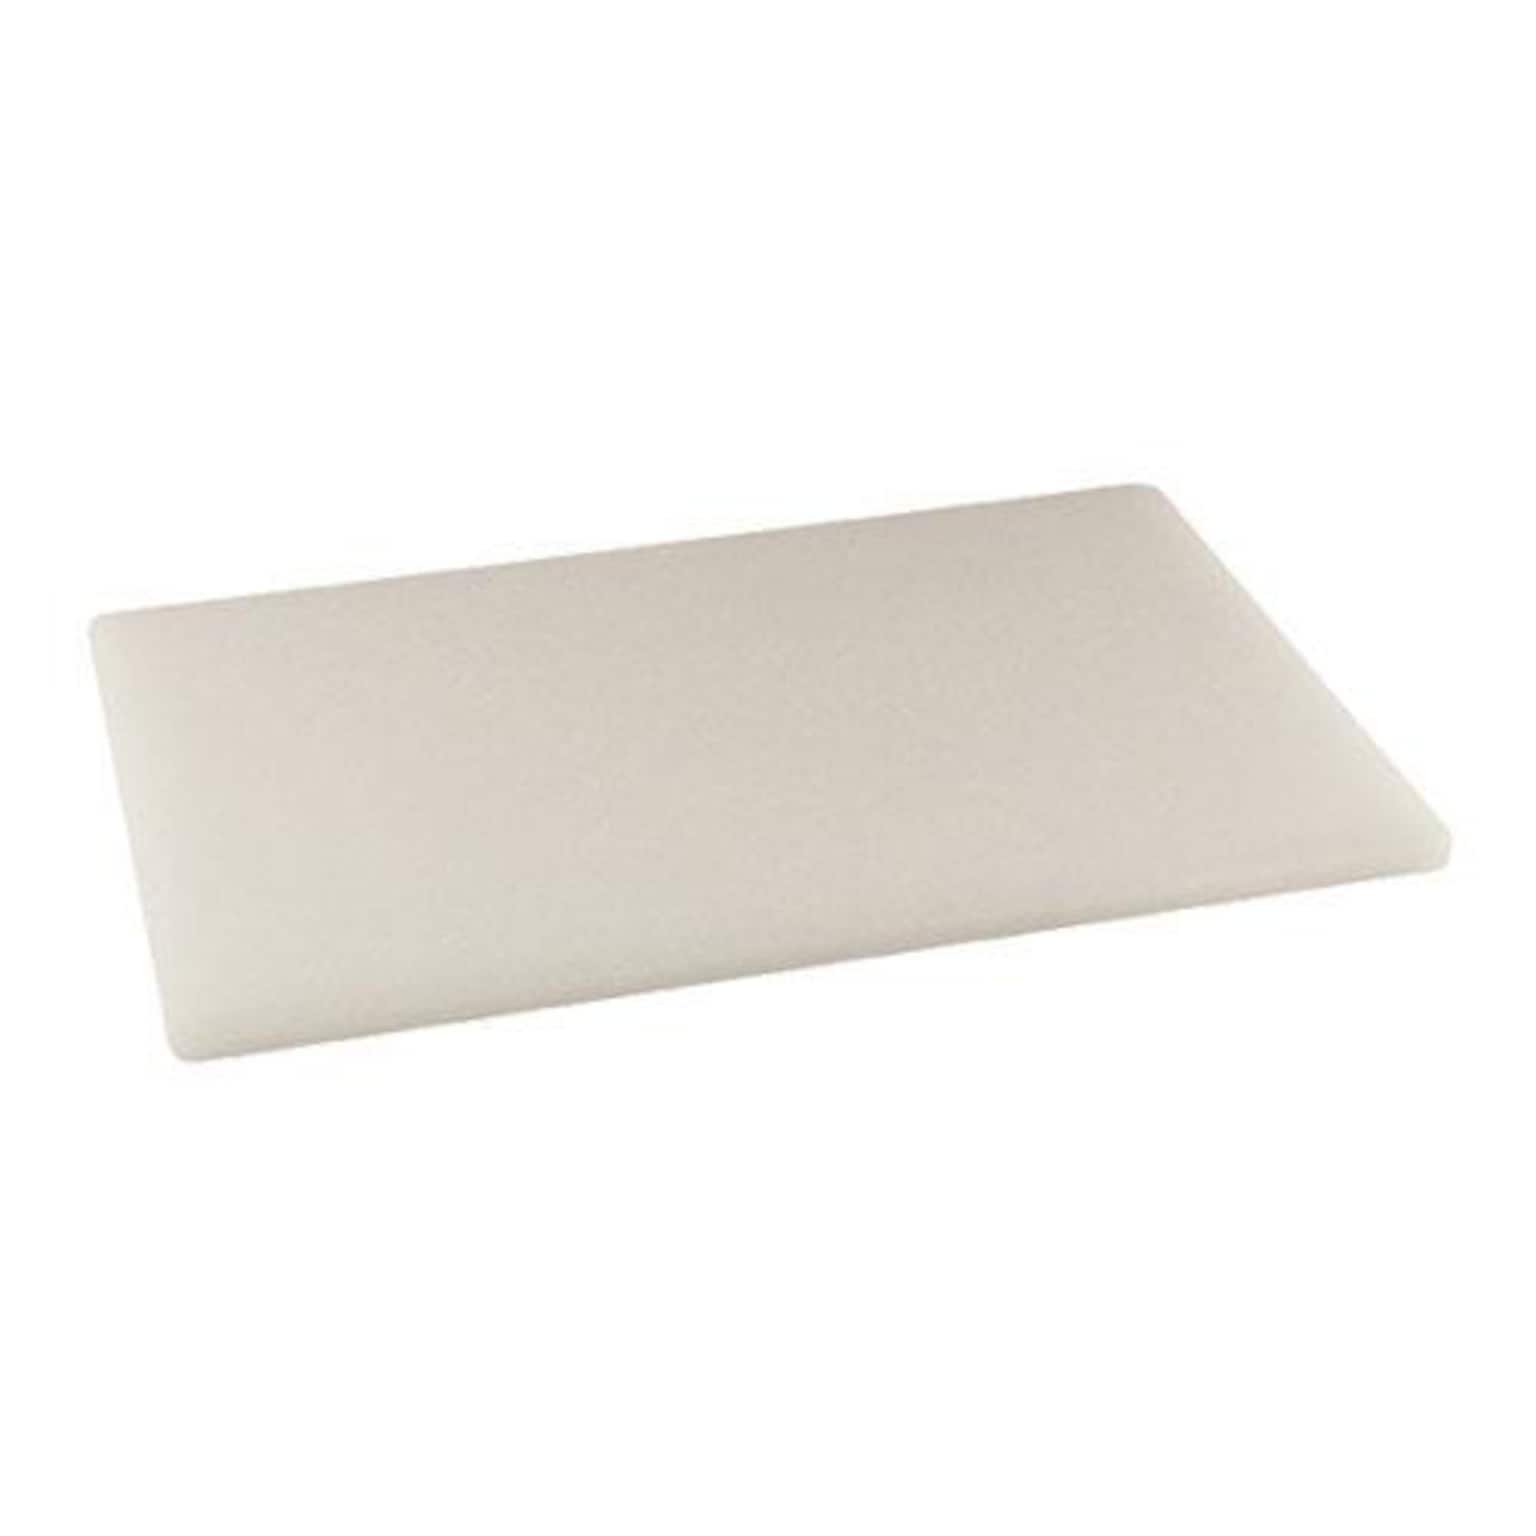 Winco 12 W x 18 D Plastic Cutting Board, White